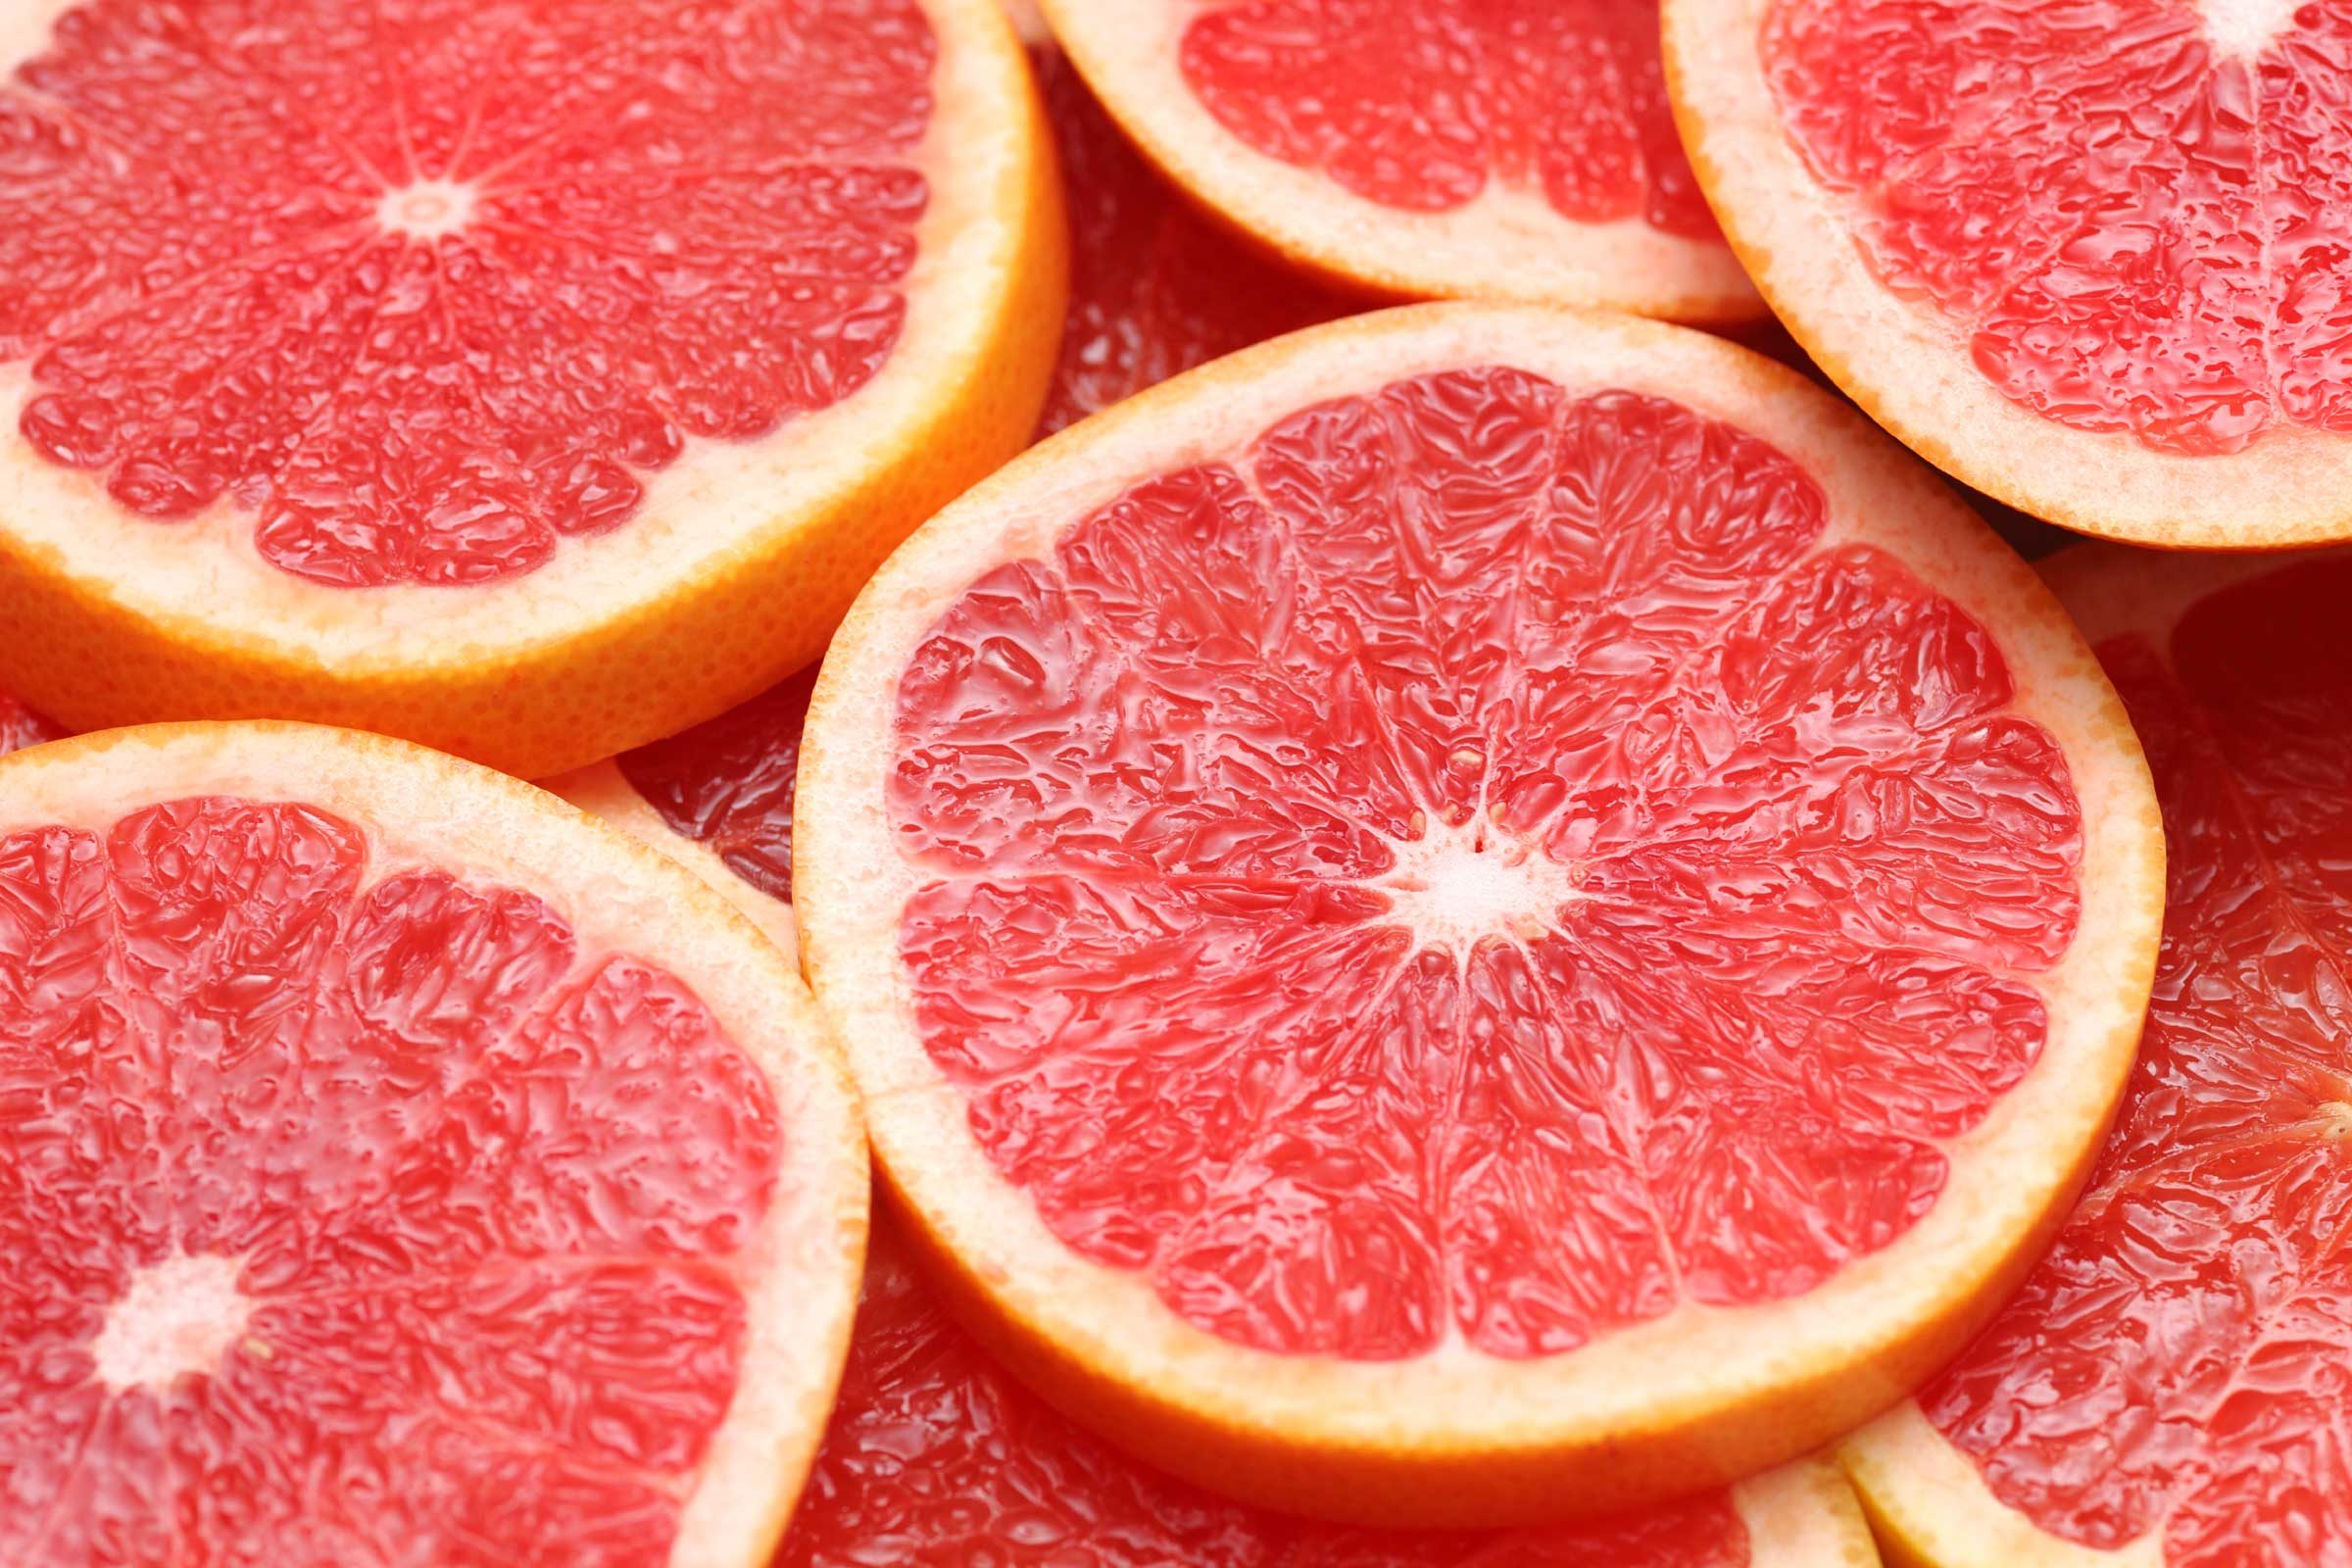 Eat grapefruit for breakfast